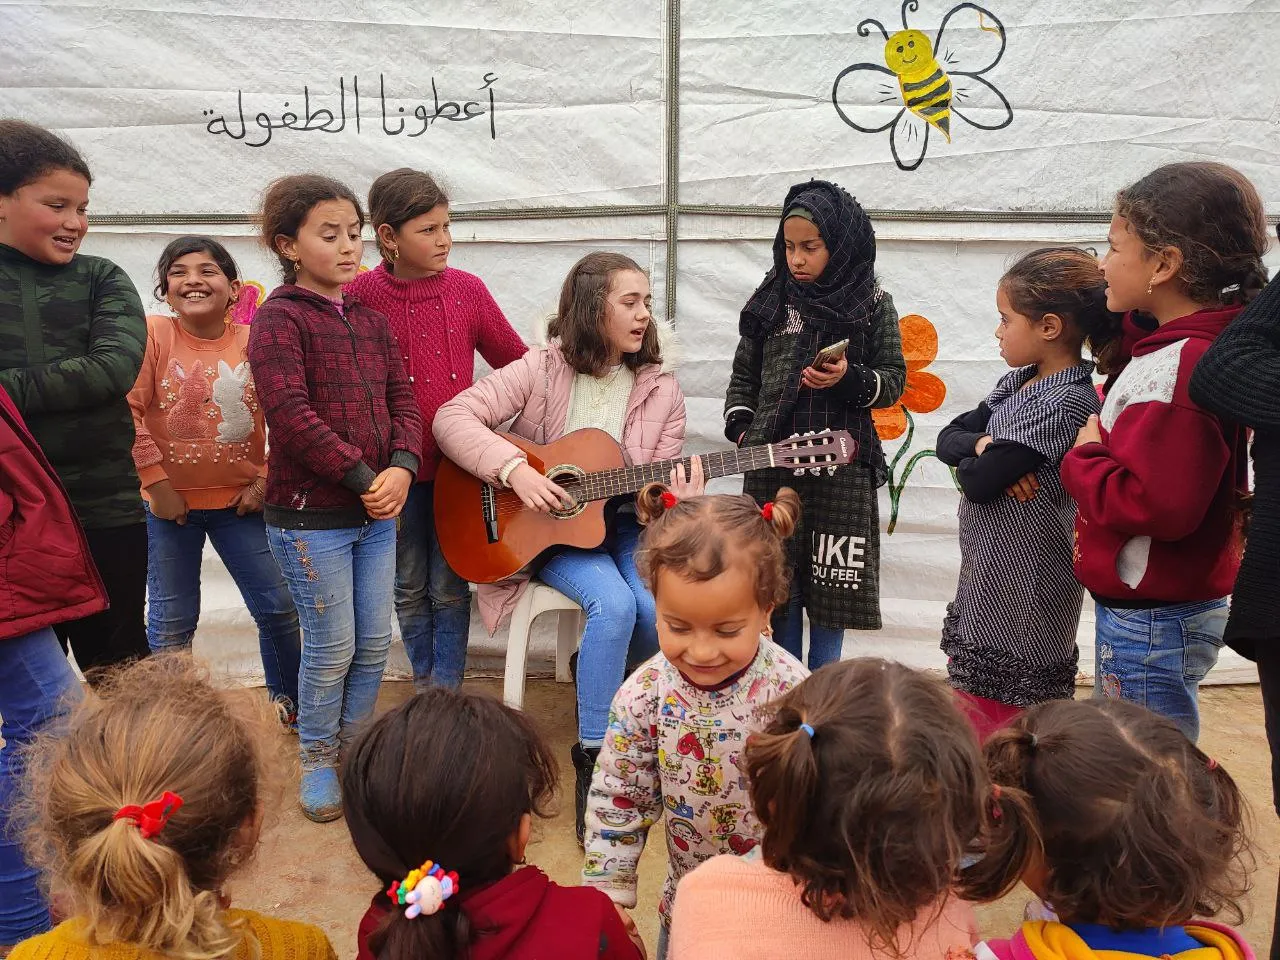 "الشبكة السورية" تُعلن قبول ترشيح الطفلة الكردية "سيرين نعسان" لجائزة السلام الدولية للأطفال 2022